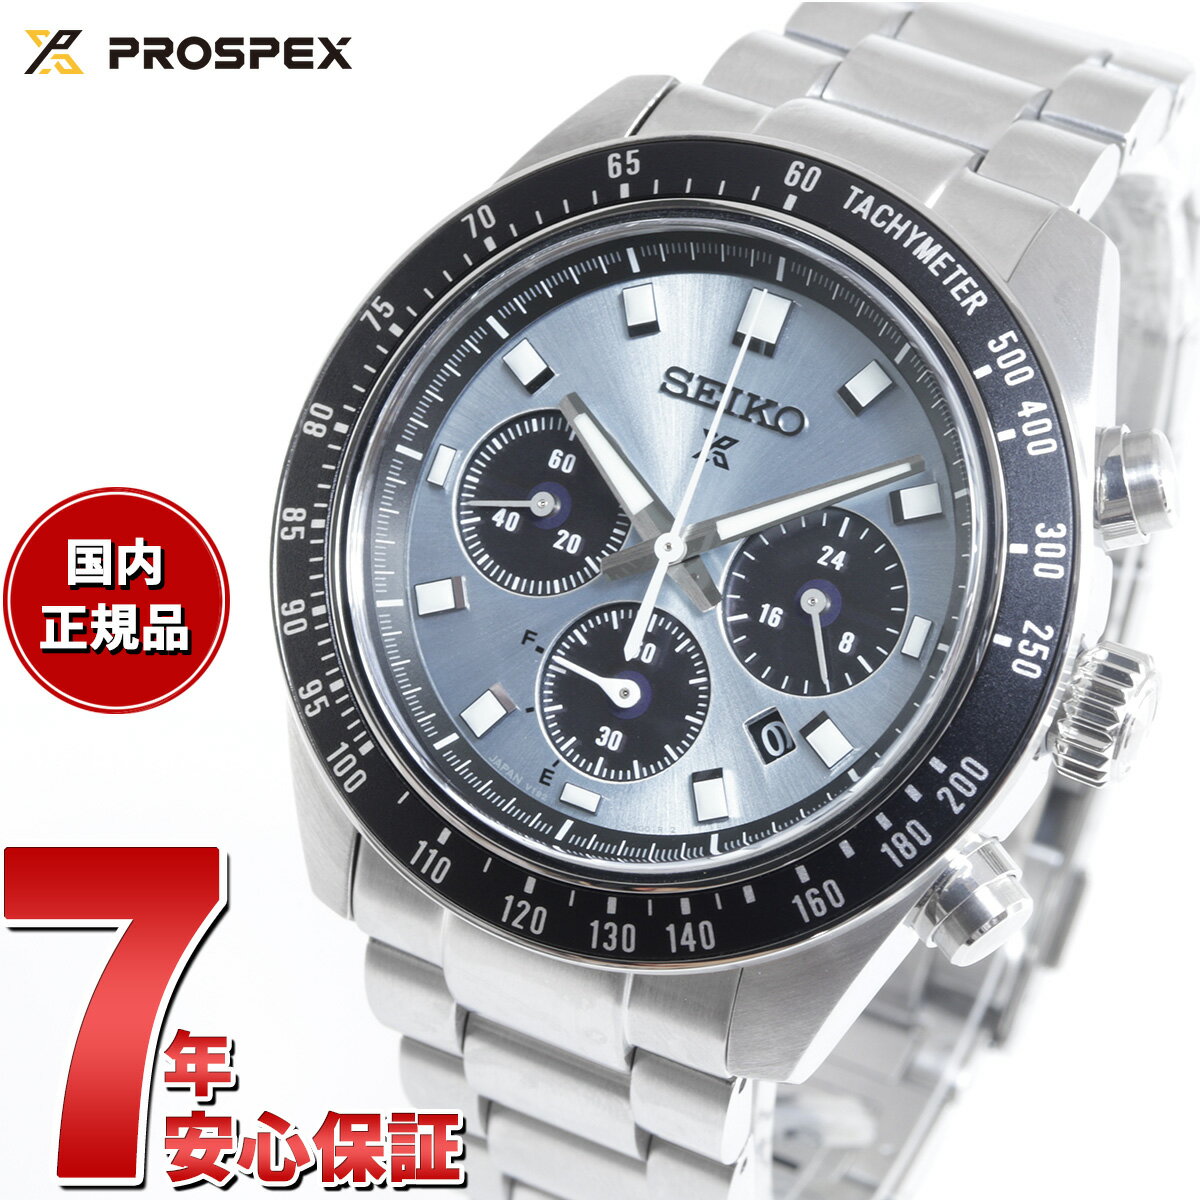 プロスペックス セイコー プロスペックス SBDL109 スピードタイマー ソーラークロノグラフ 腕時計 メンズ SEIKO PROSPEX SPEEDTIMER クリスタルトロフィー 日本製